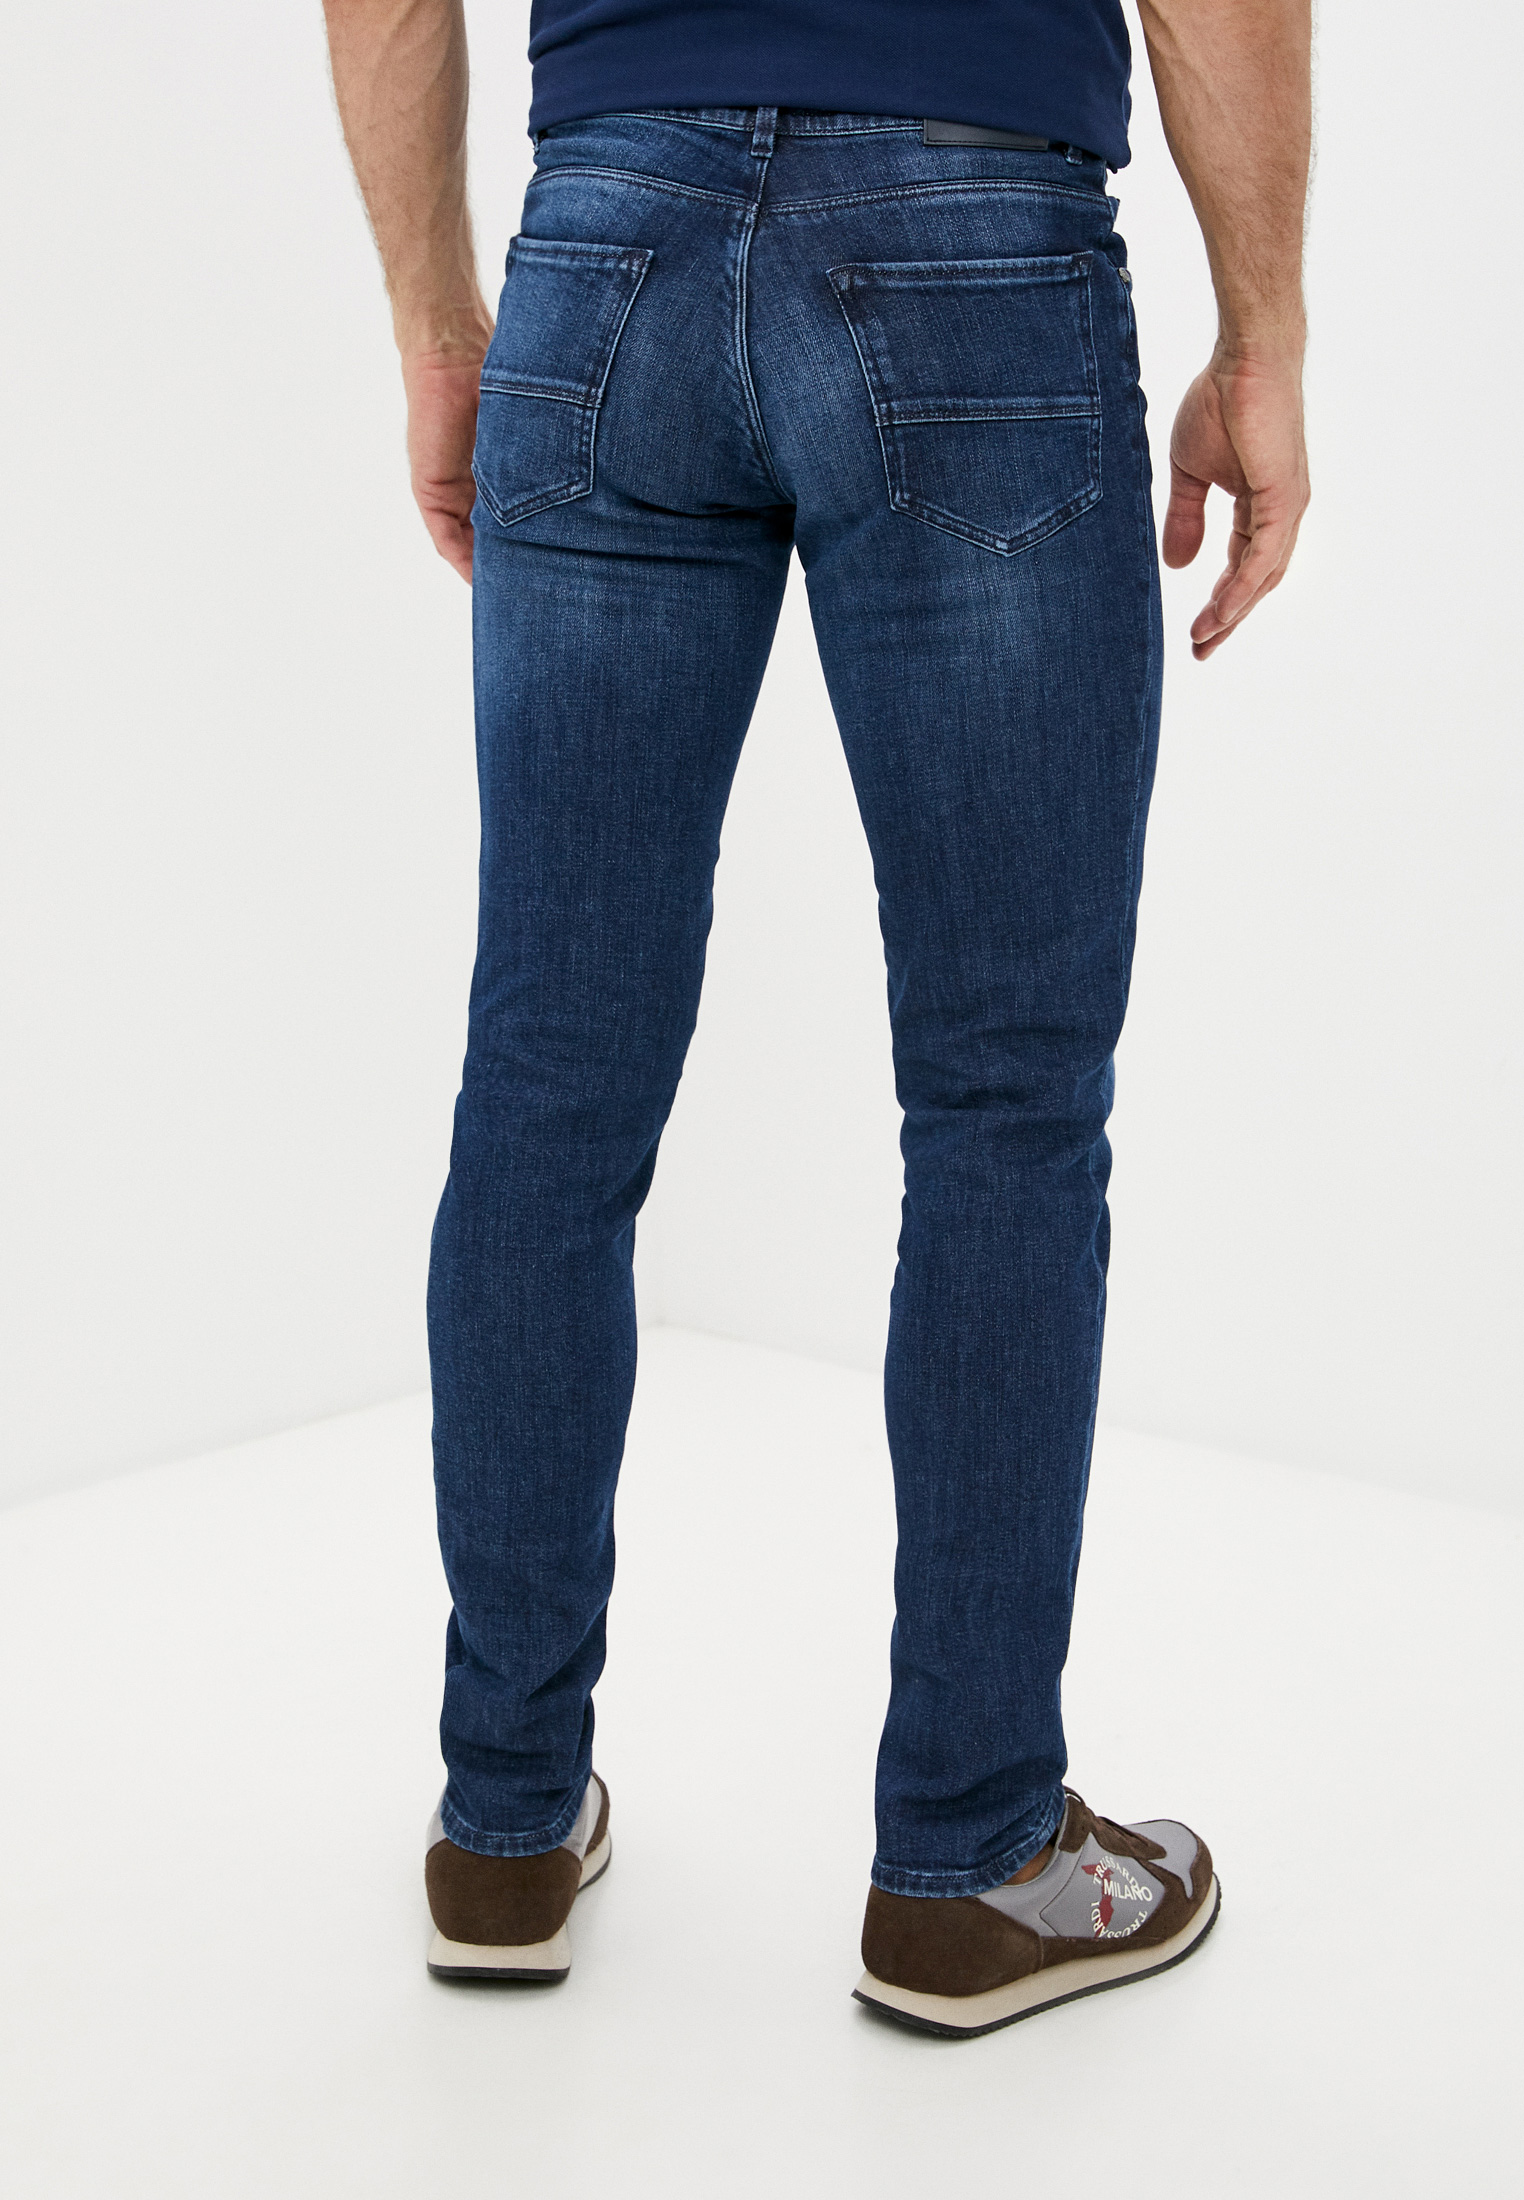 Мужские прямые джинсы Trussardi (Труссарди) 52J00000-1T005108: изображение 4